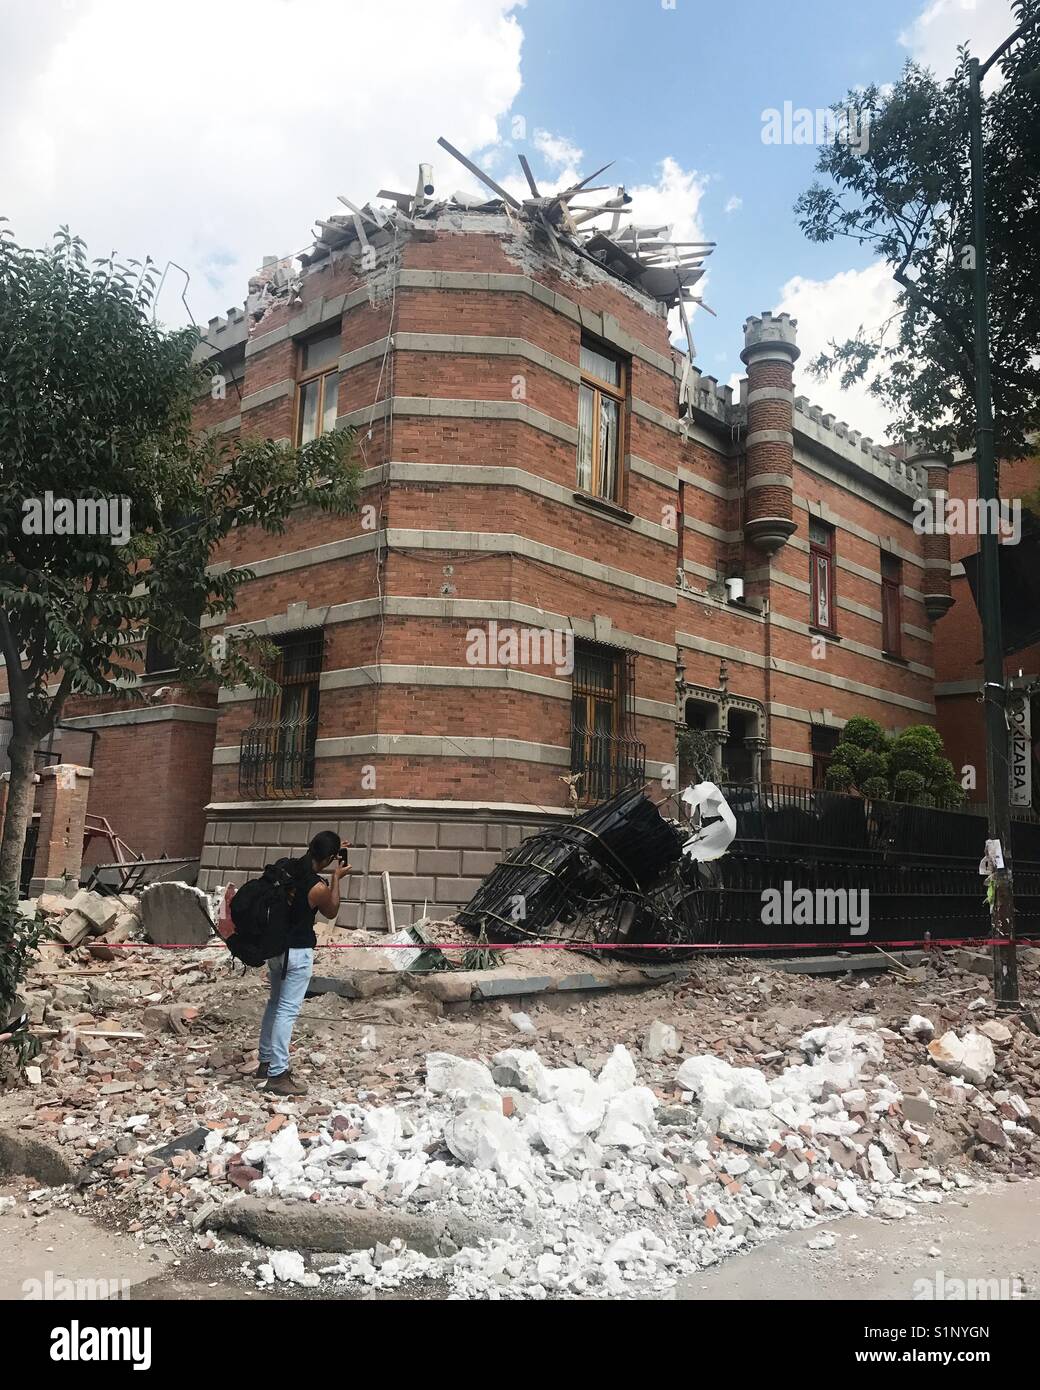 Un photographe prend des photos d'un bâtiment endommagé après un tremblement de terre à Colonia Roma, Mexico, Mexique Banque D'Images